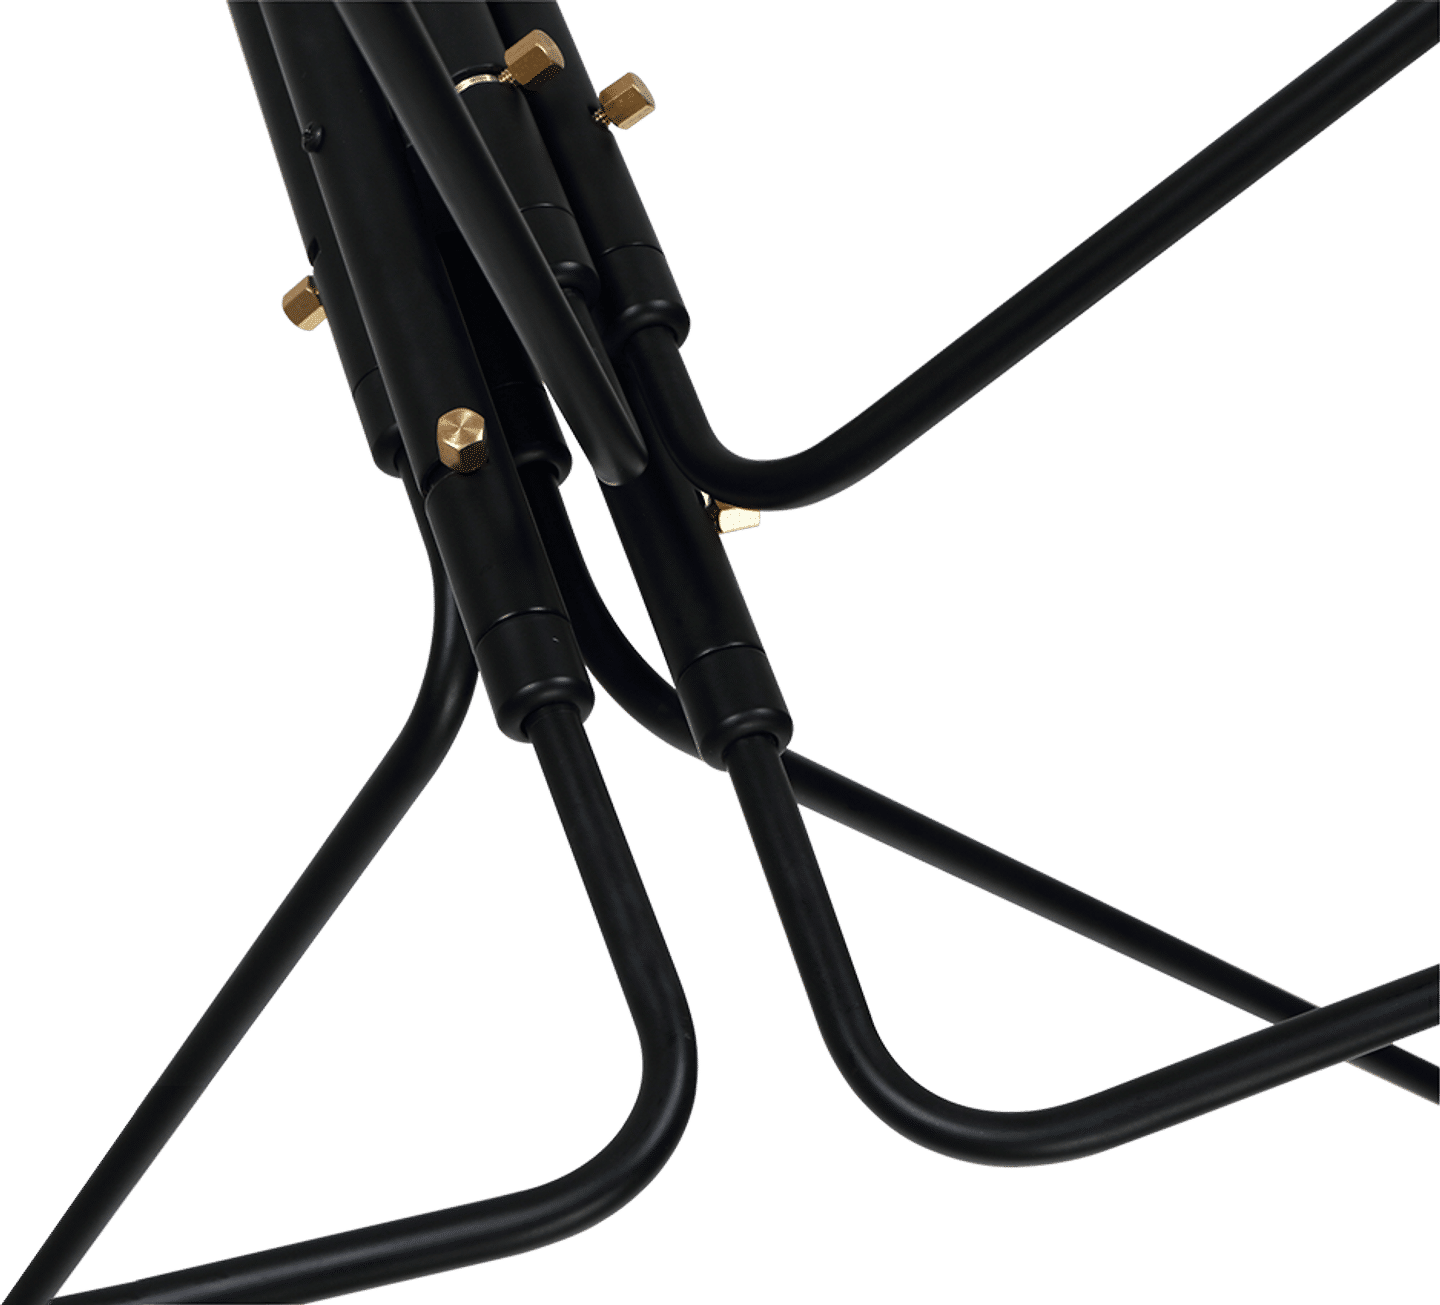 MCL-R6 stil modern hängande lampa Black image.